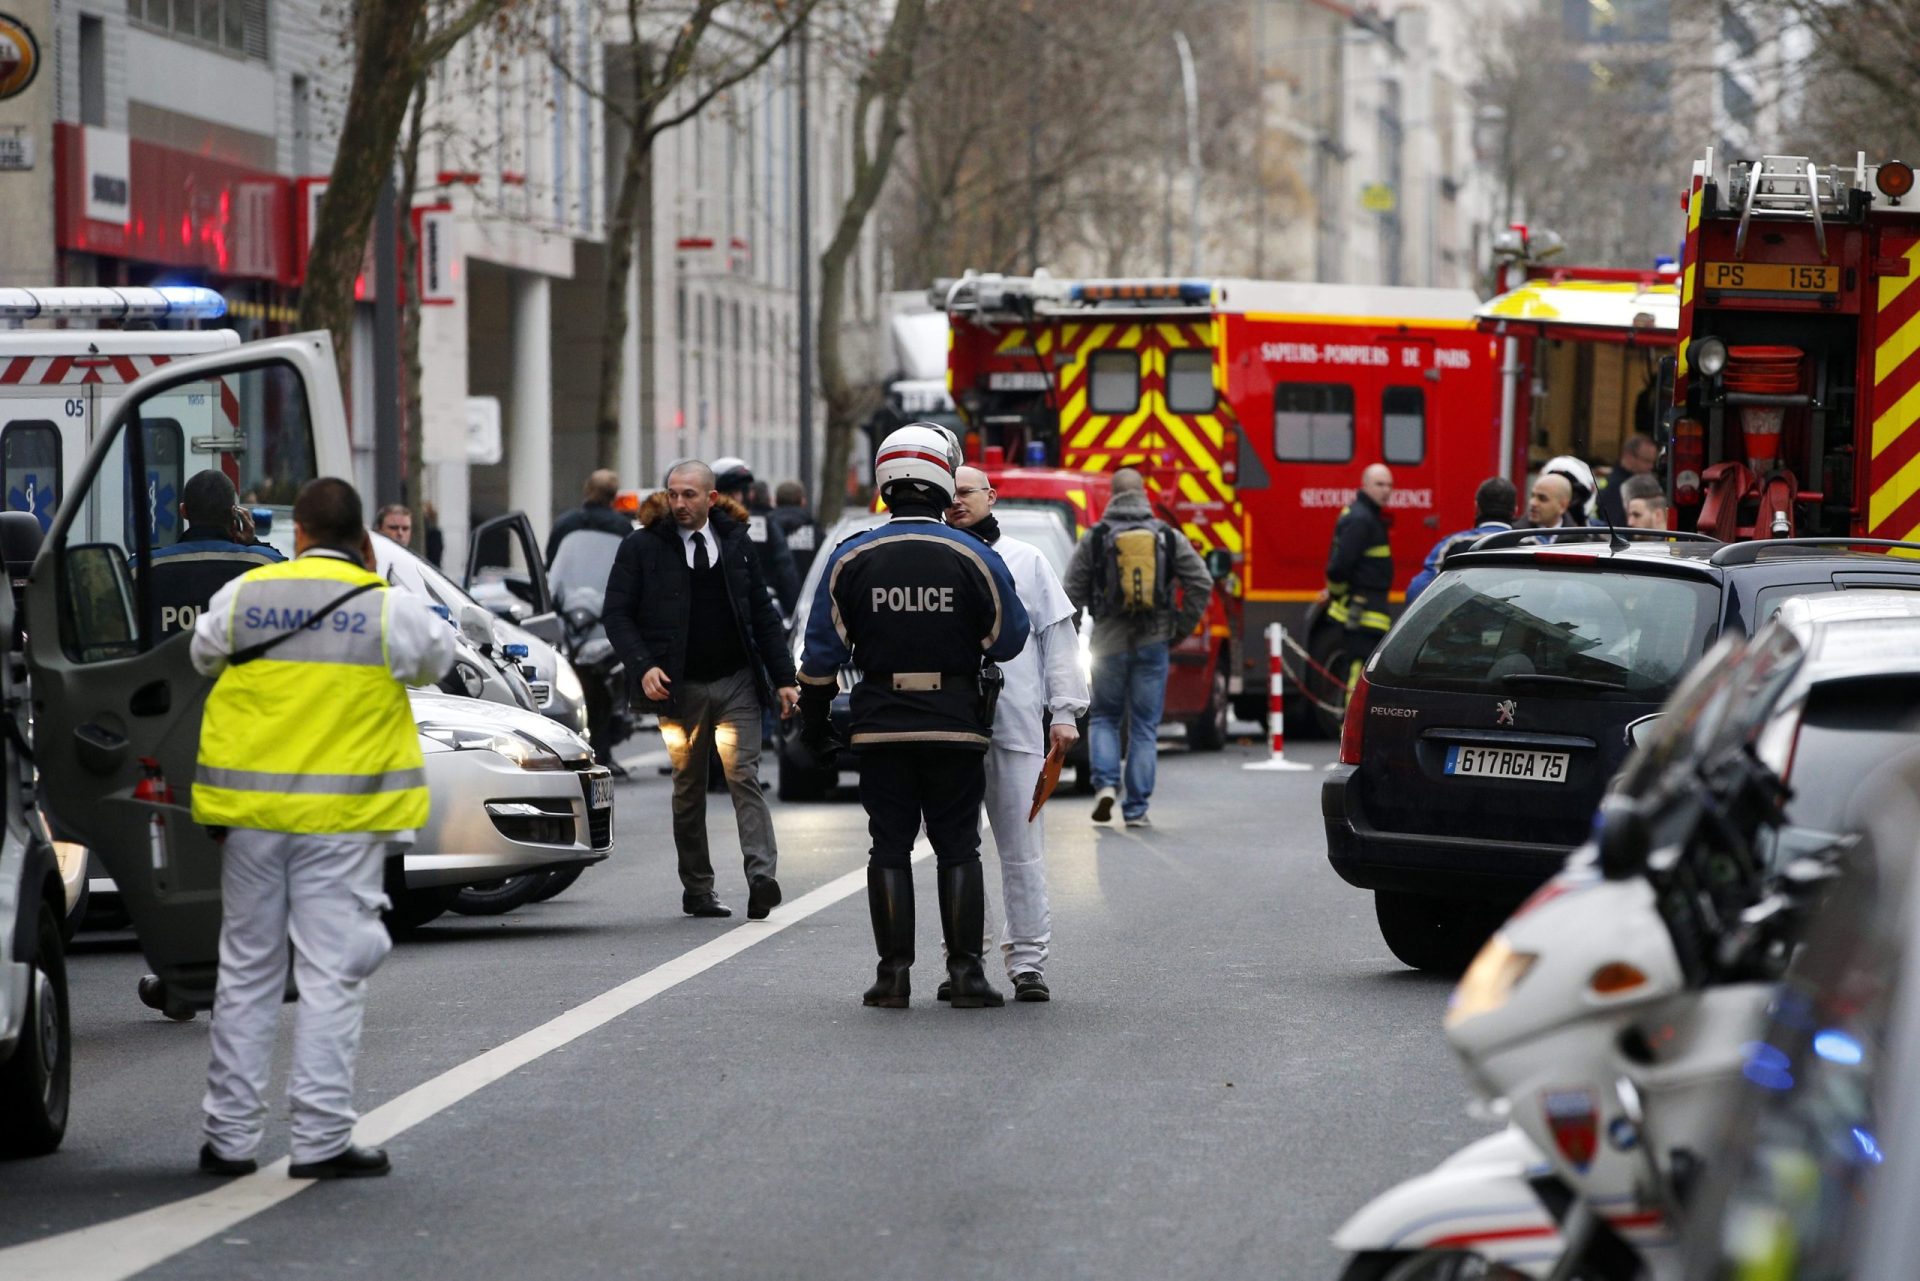 Imã da mesquita de Lisboa condena “acto bárbaro” em Paris